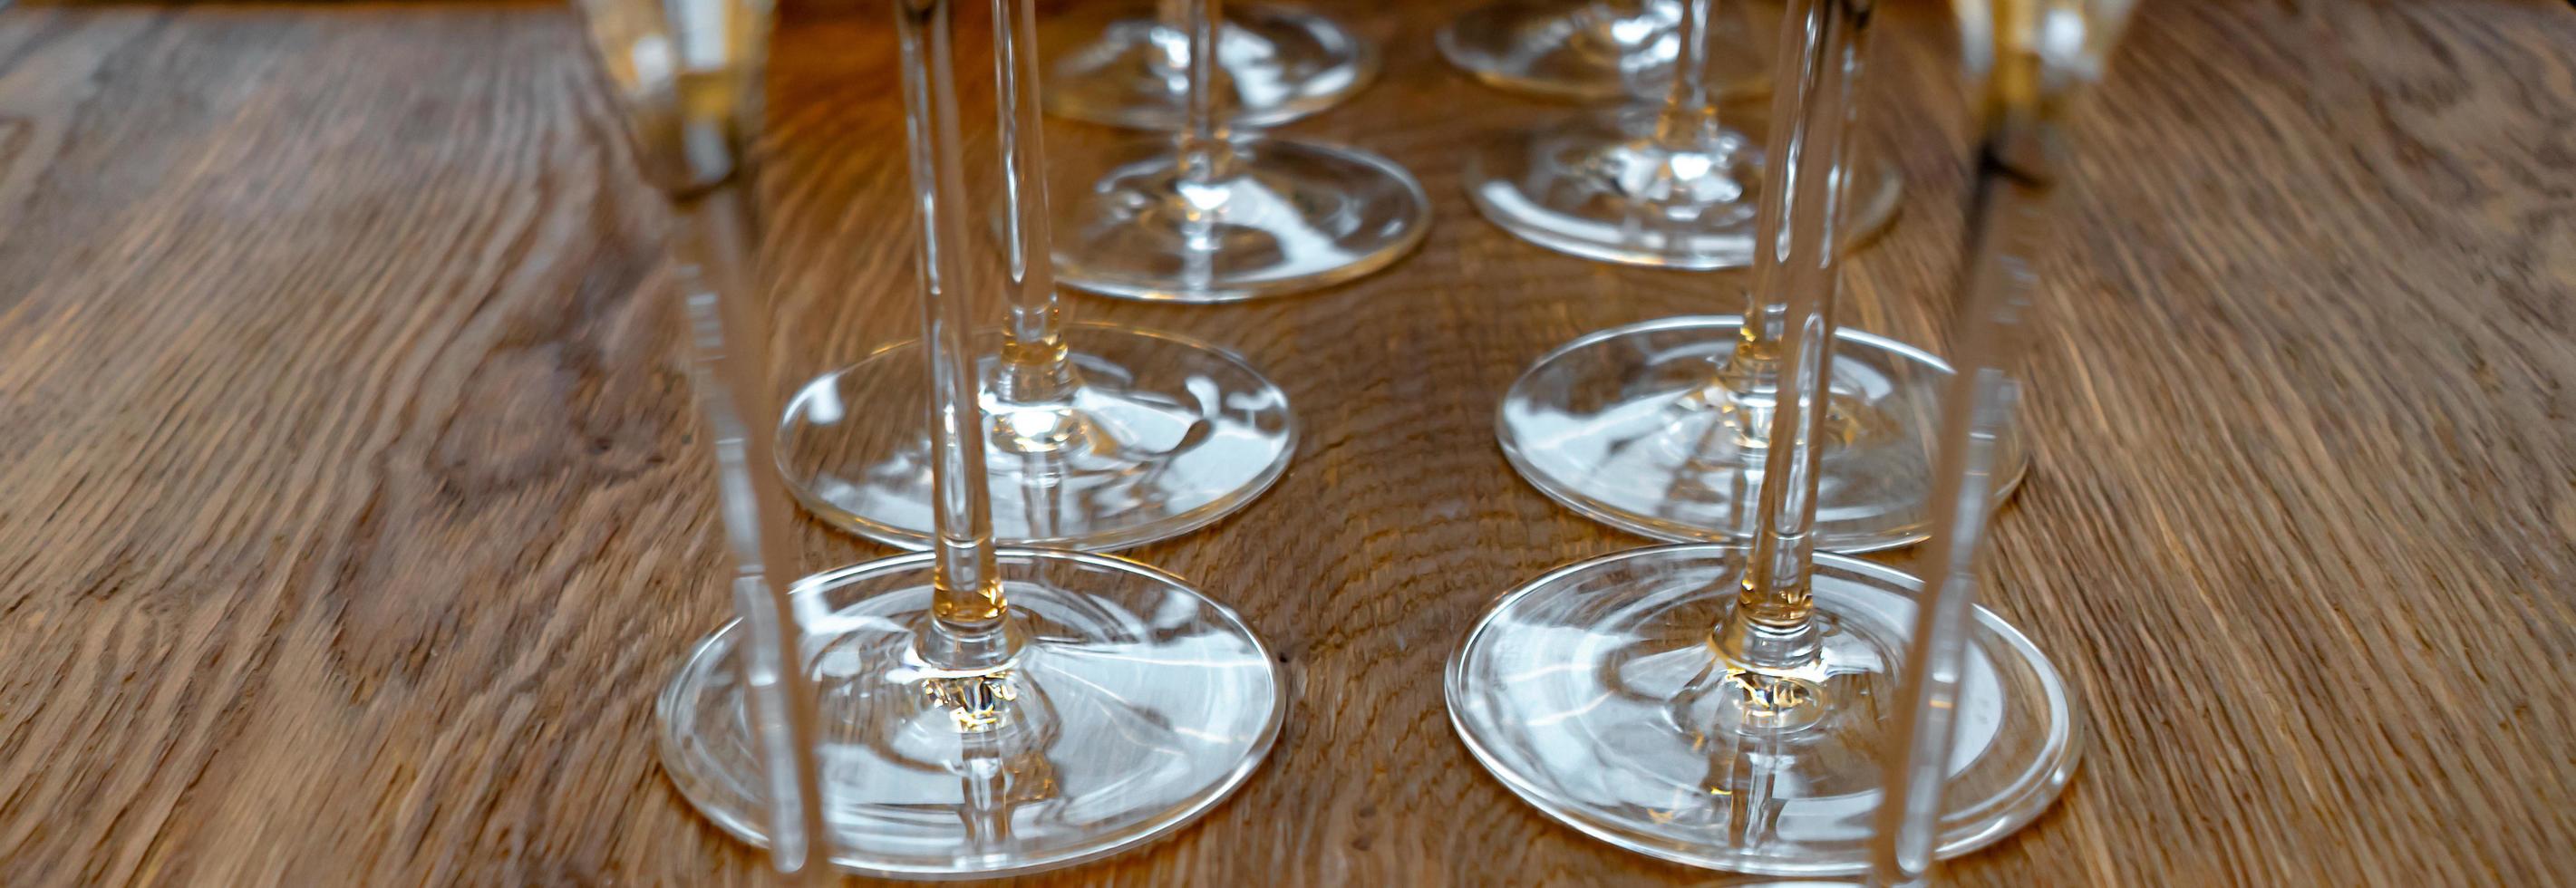 deux rangées de verres à vin sur une table en bois photo